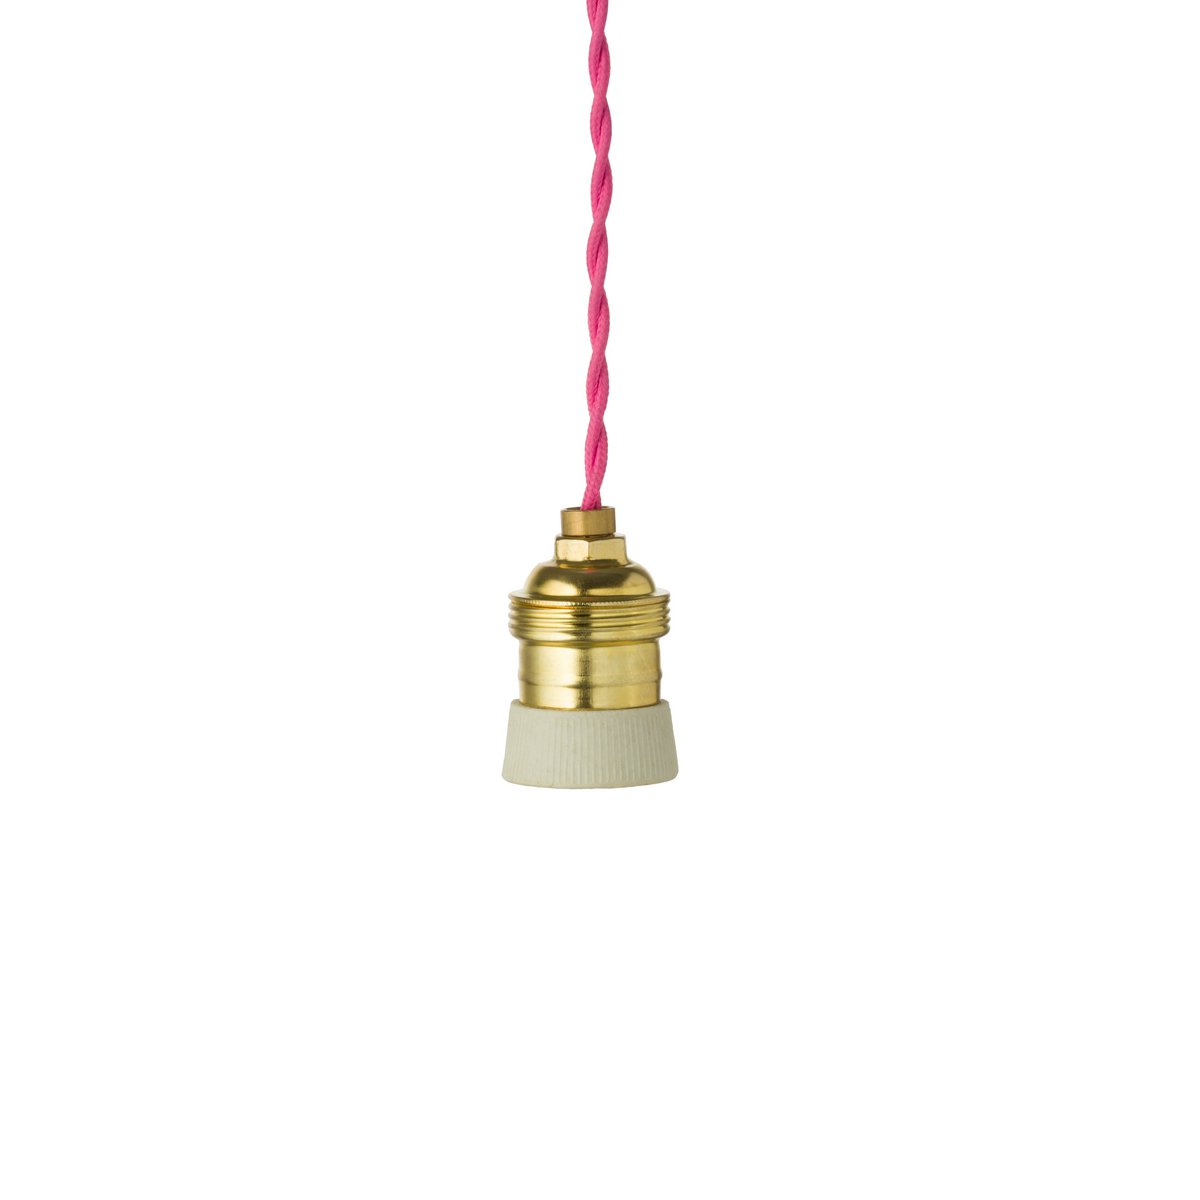 XXL Hängelampe Vogelkäfig 73cm Rosa Pink Vogel Deckenlampe Käfig Lampe